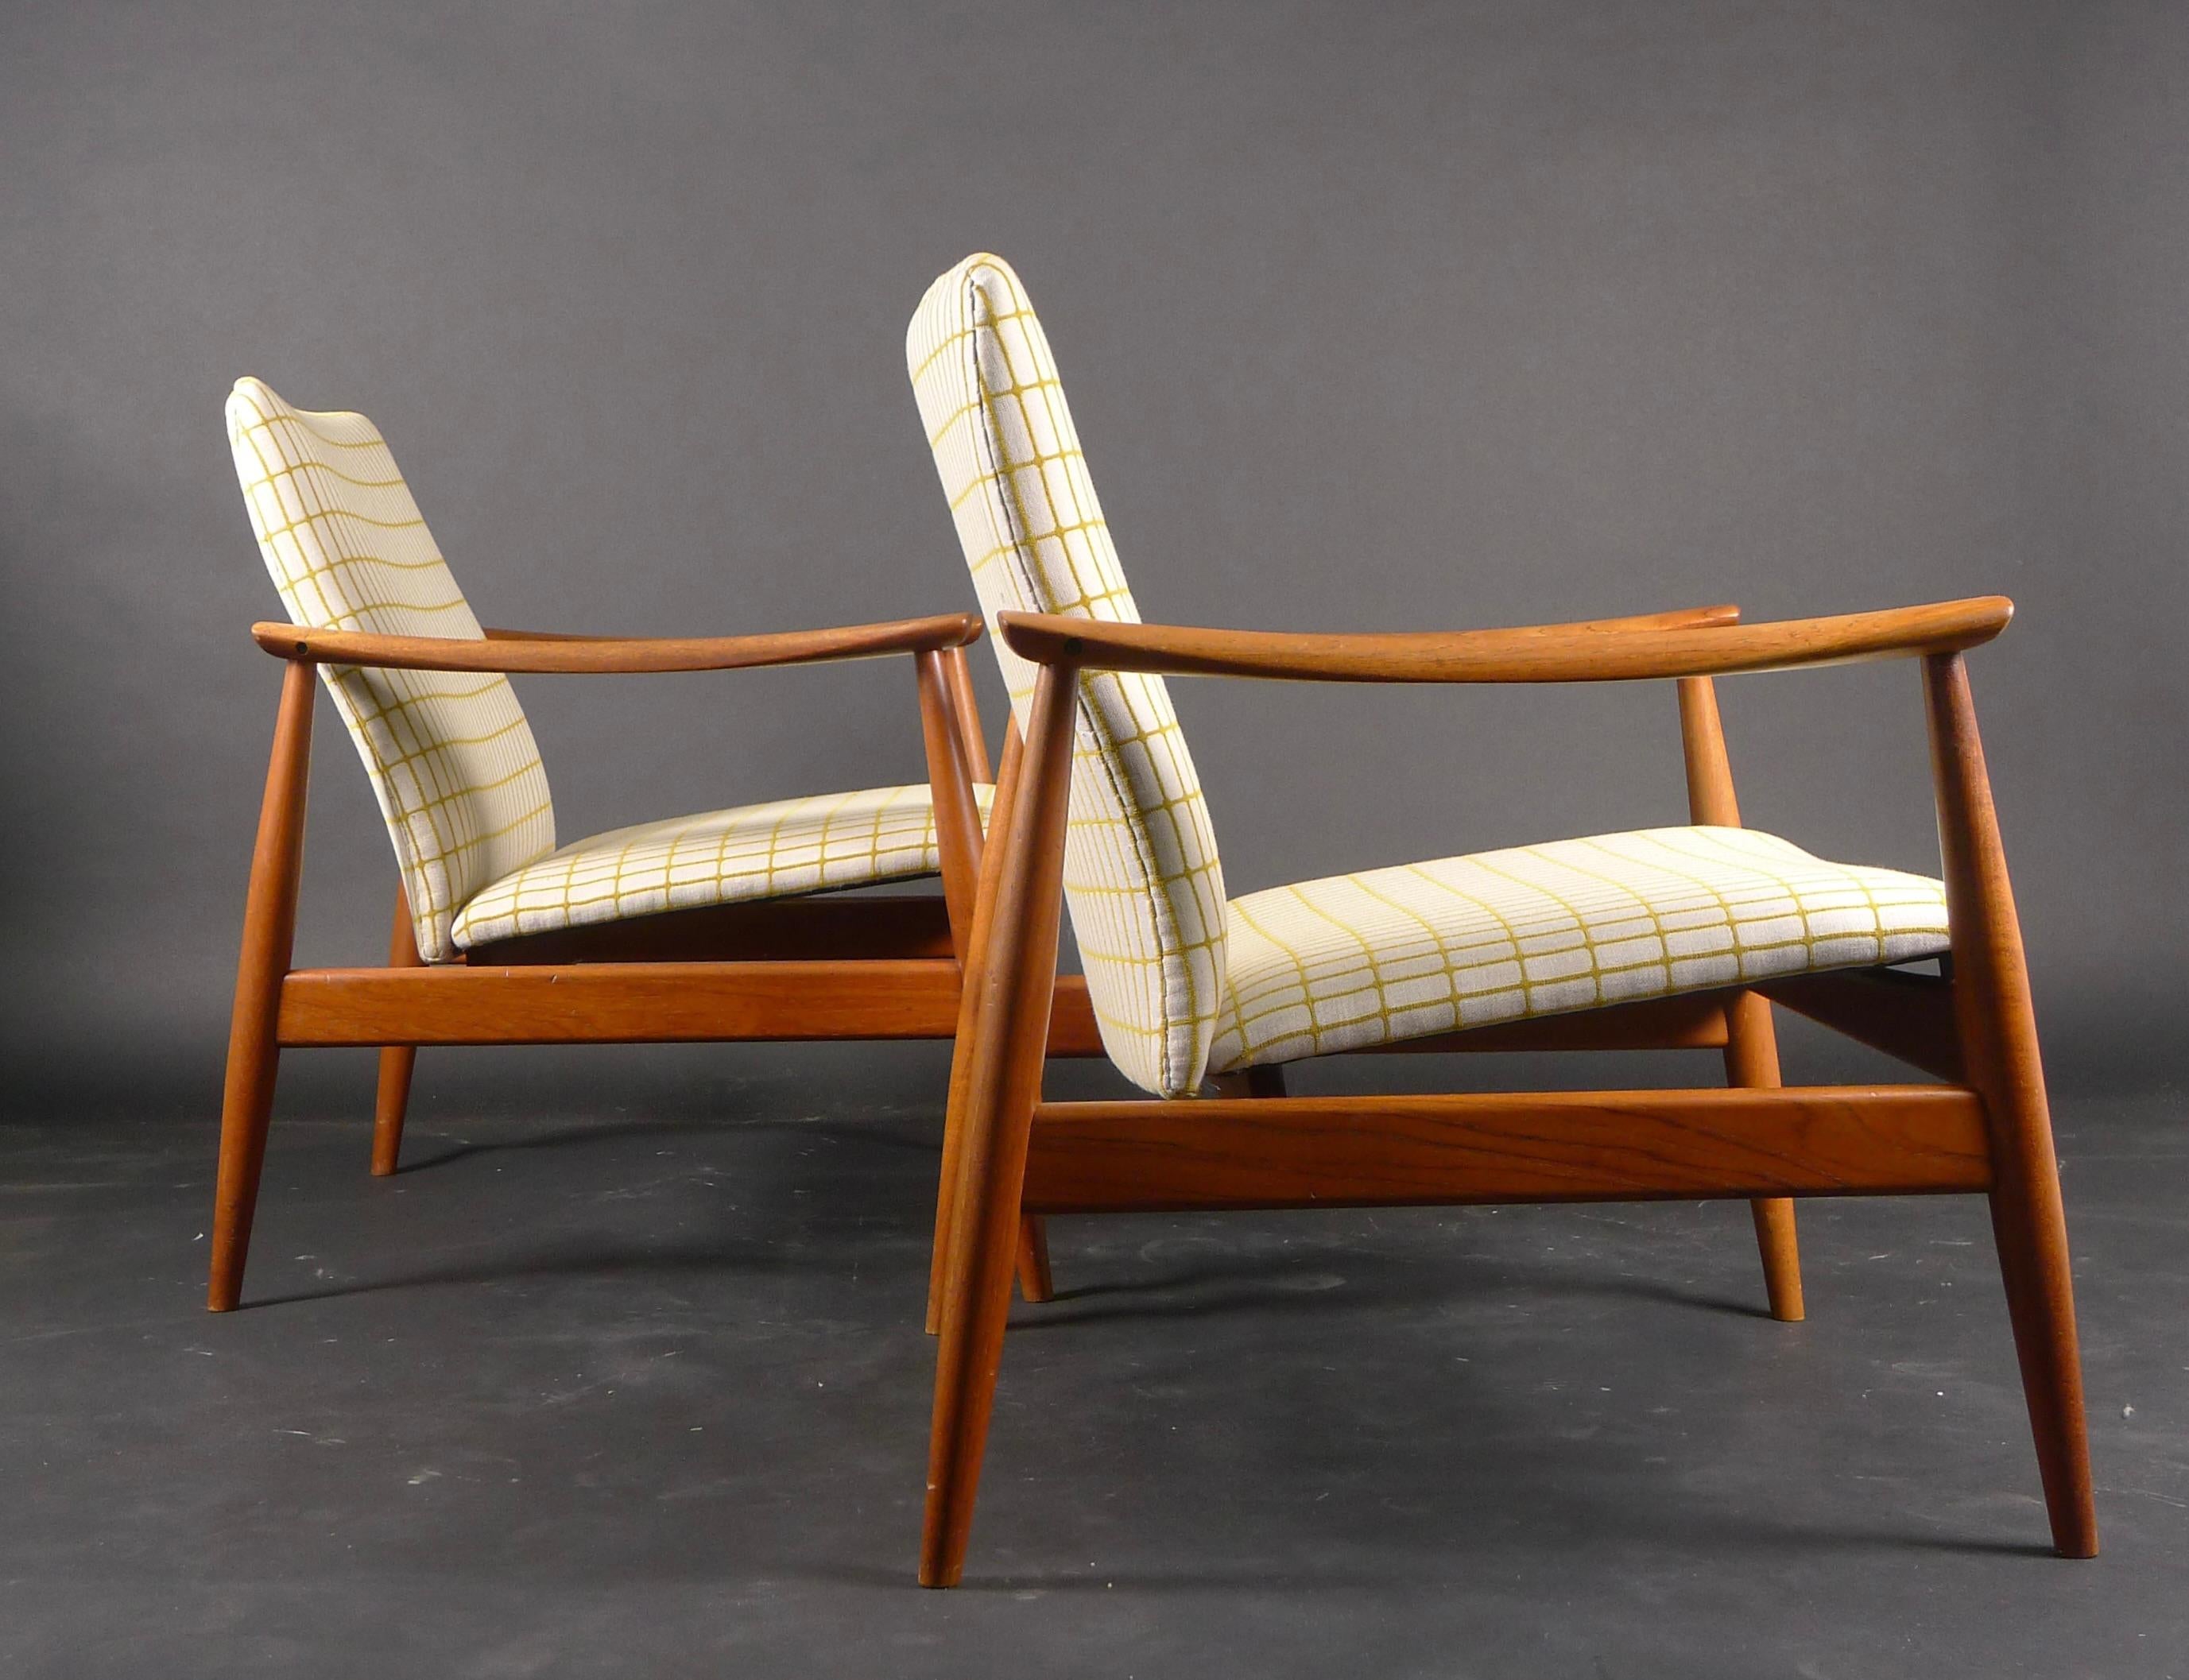 Upholstery Finn Juhl, Pair of Teak Easy Chairs, Model Fd138, France & Son, 1959 For Sale